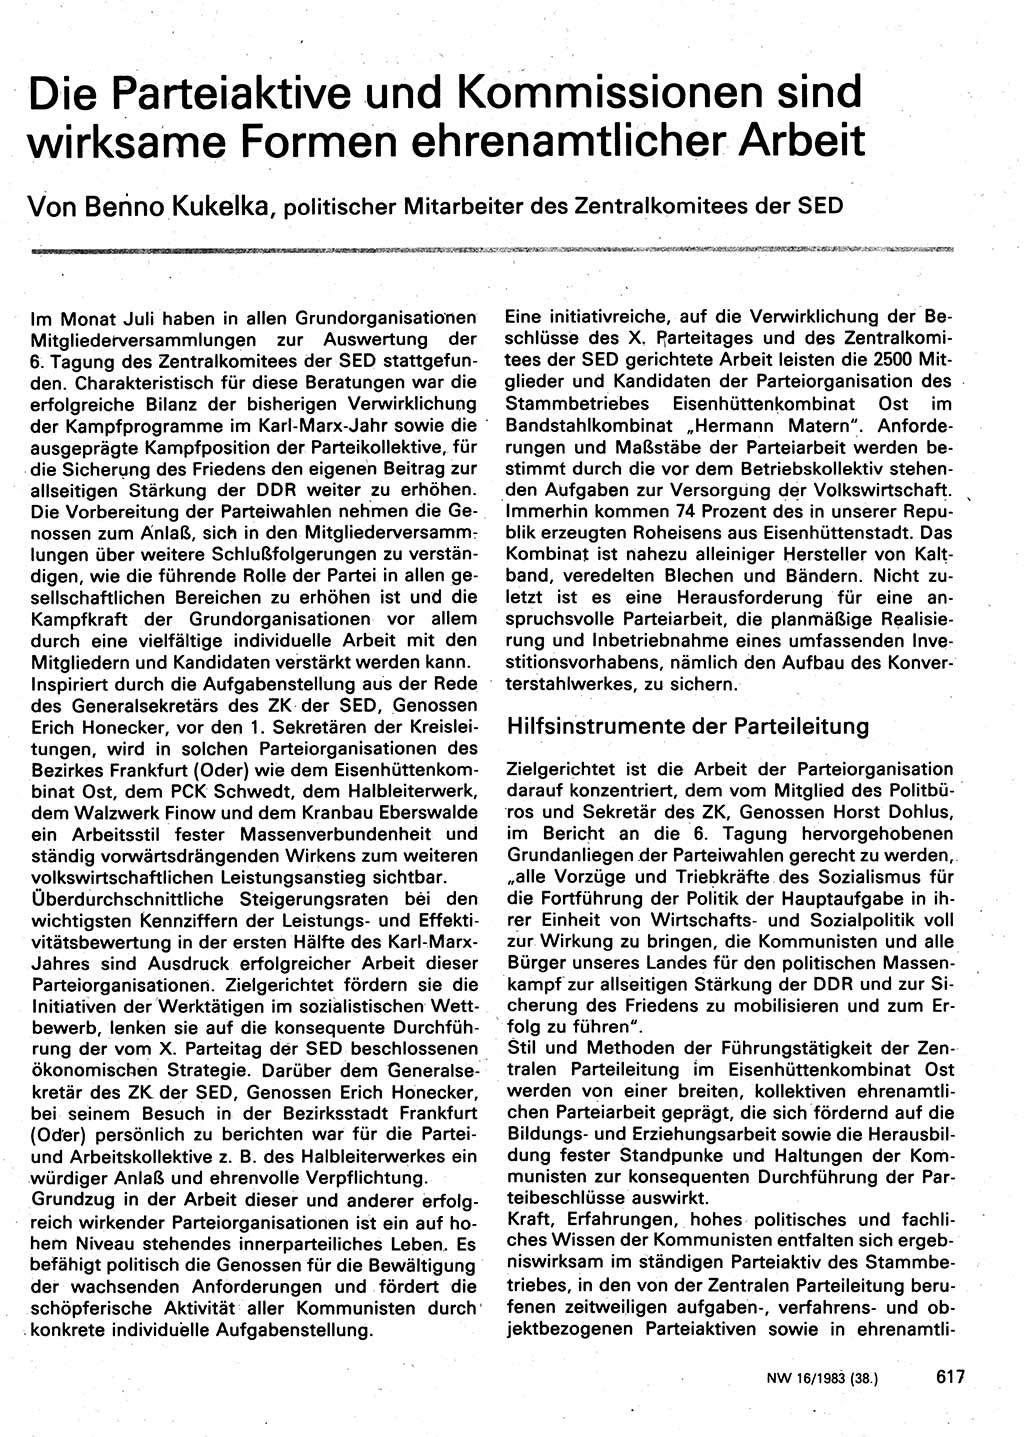 Neuer Weg (NW), Organ des Zentralkomitees (ZK) der SED (Sozialistische Einheitspartei Deutschlands) für Fragen des Parteilebens, 38. Jahrgang [Deutsche Demokratische Republik (DDR)] 1983, Seite 617 (NW ZK SED DDR 1983, S. 617)